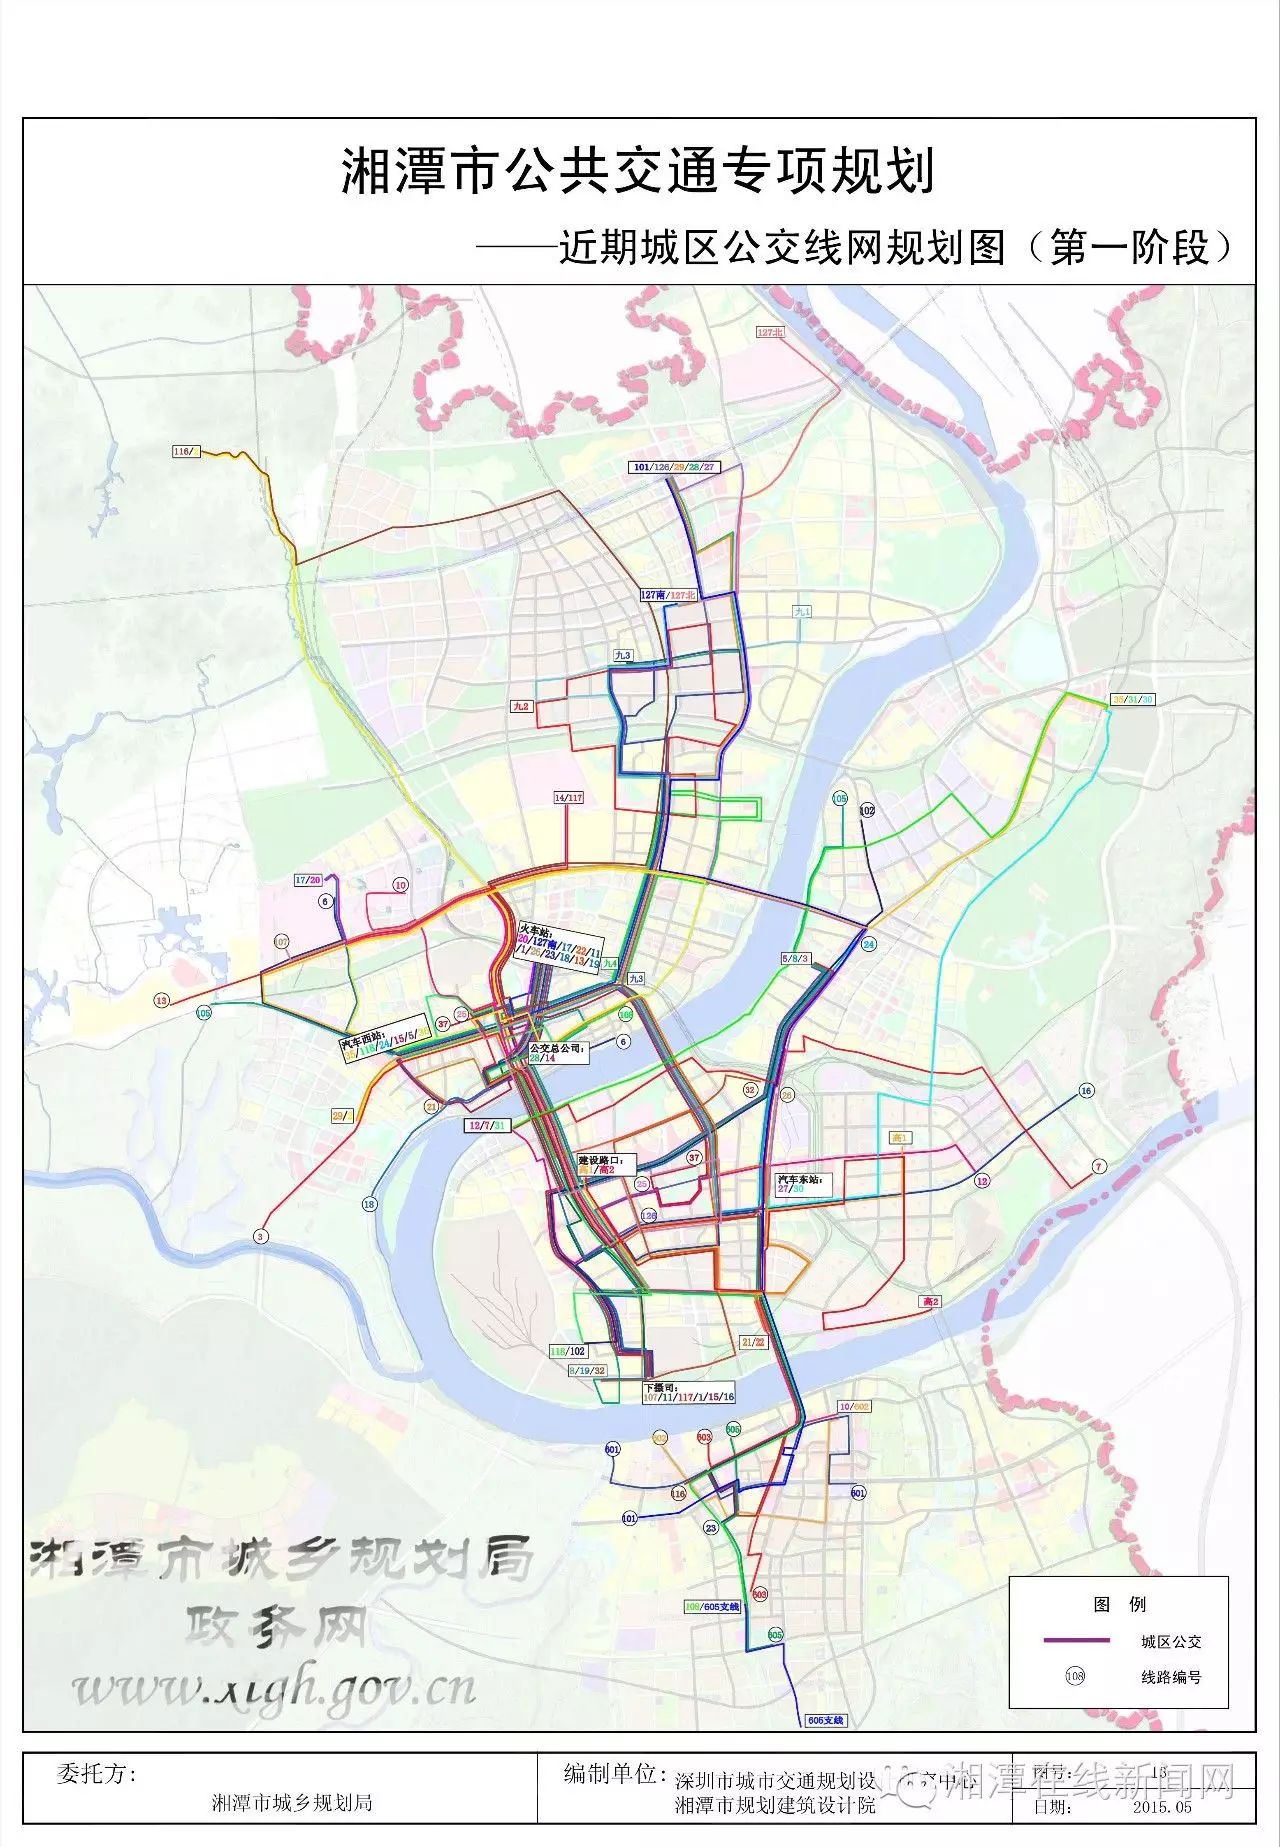 湘潭交通将有大变化!打造交通新城,这些规划与你密切